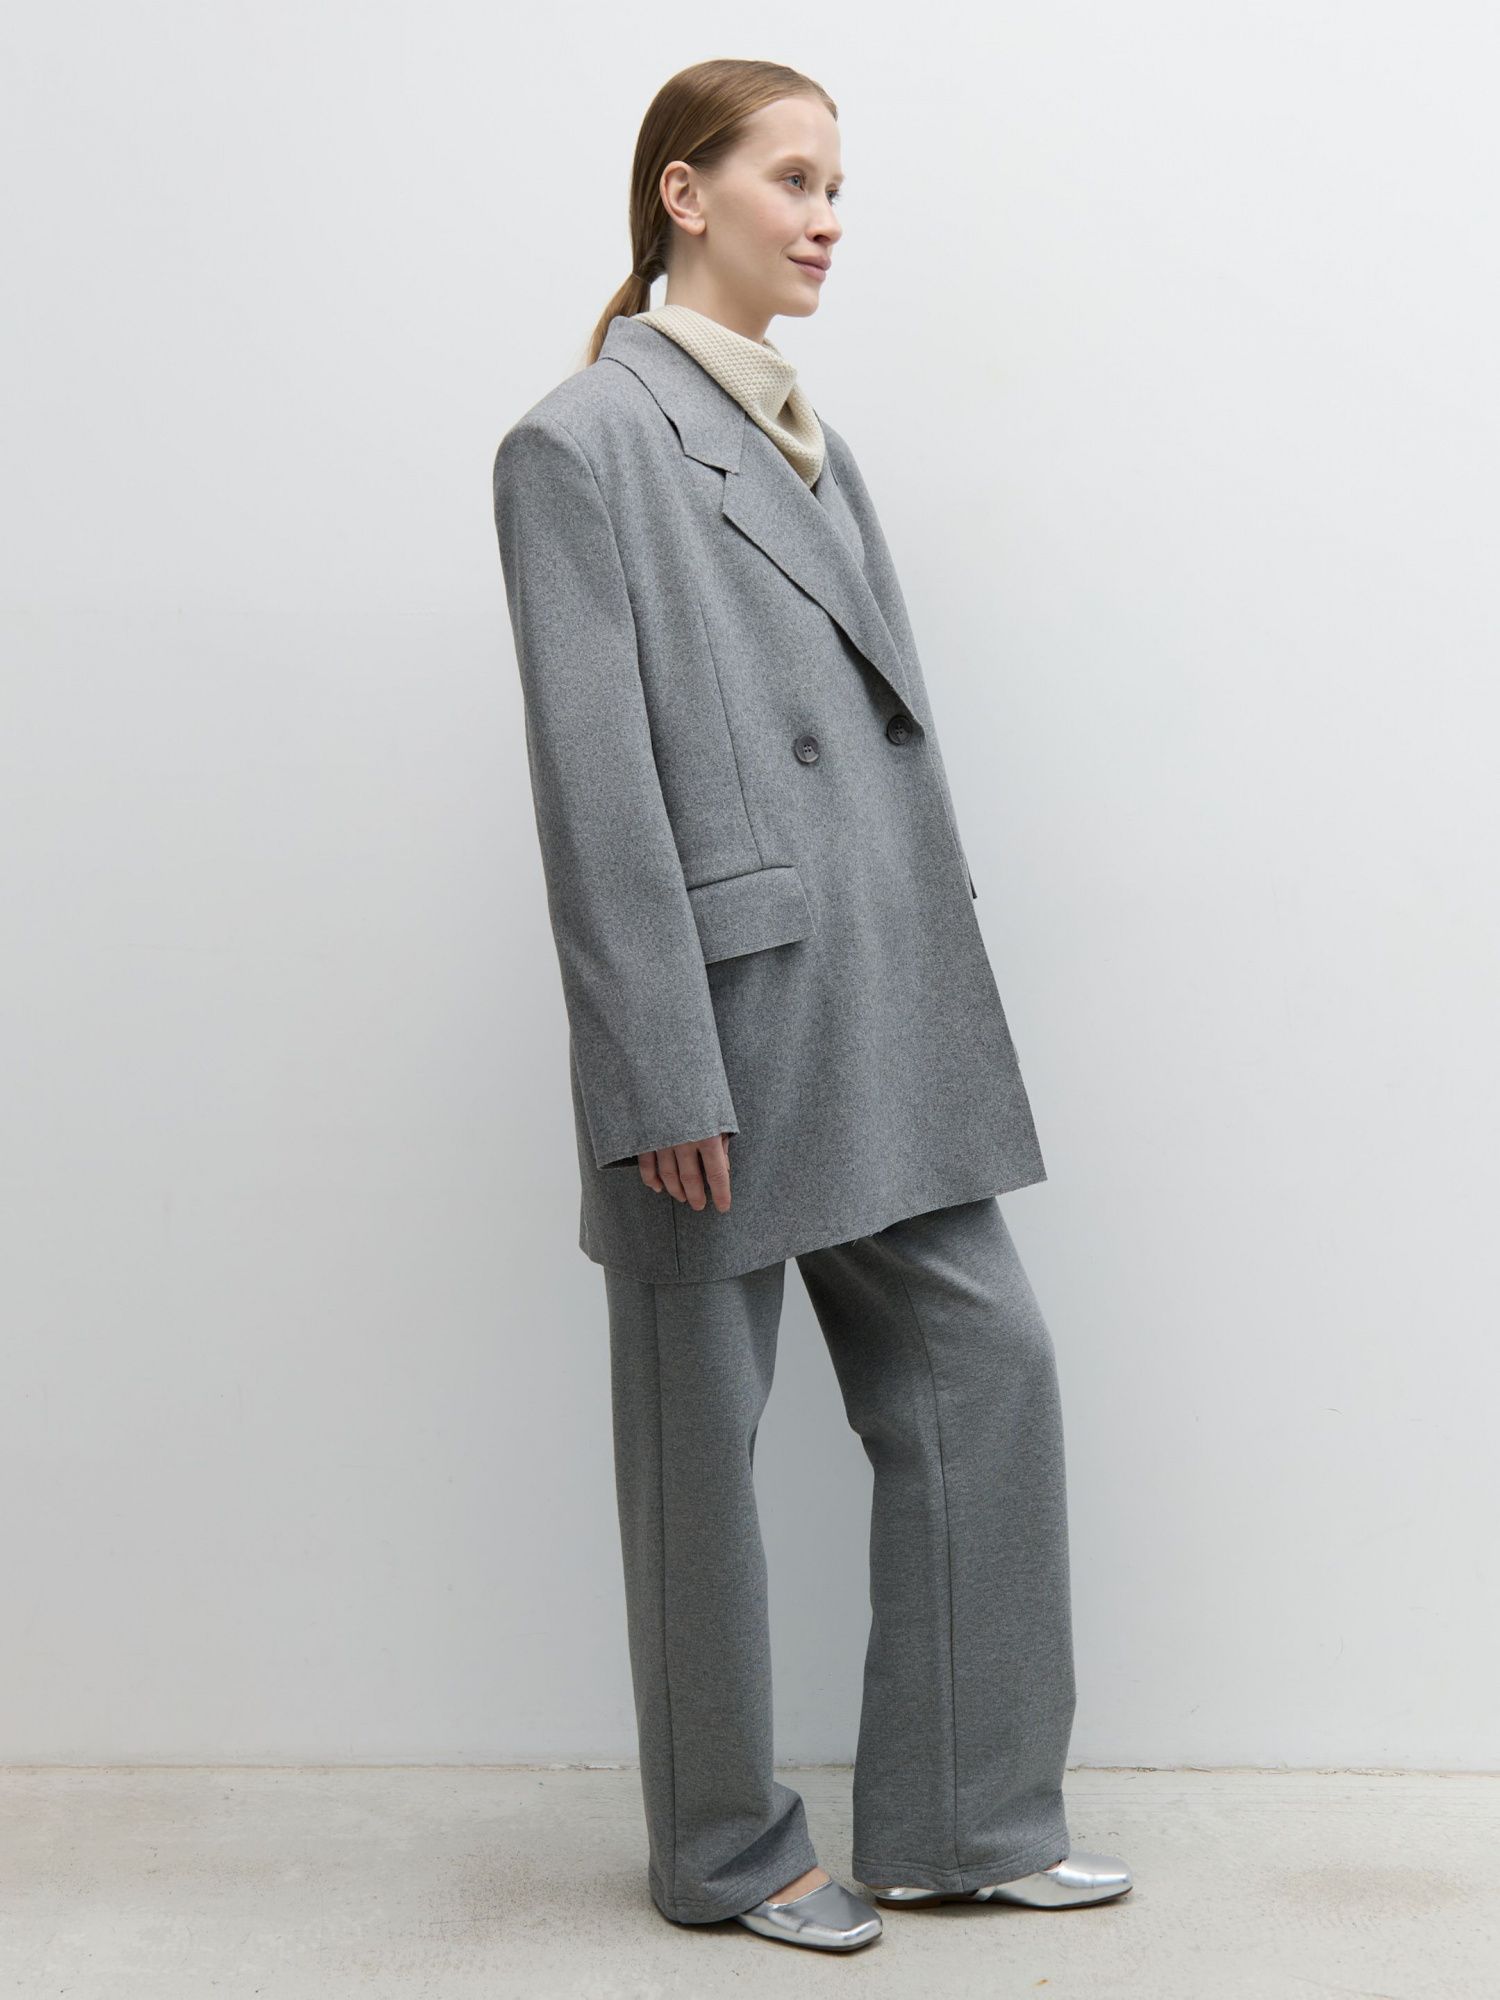 Жакет-пальто из итальянской шерсти серый - фото 3. Around